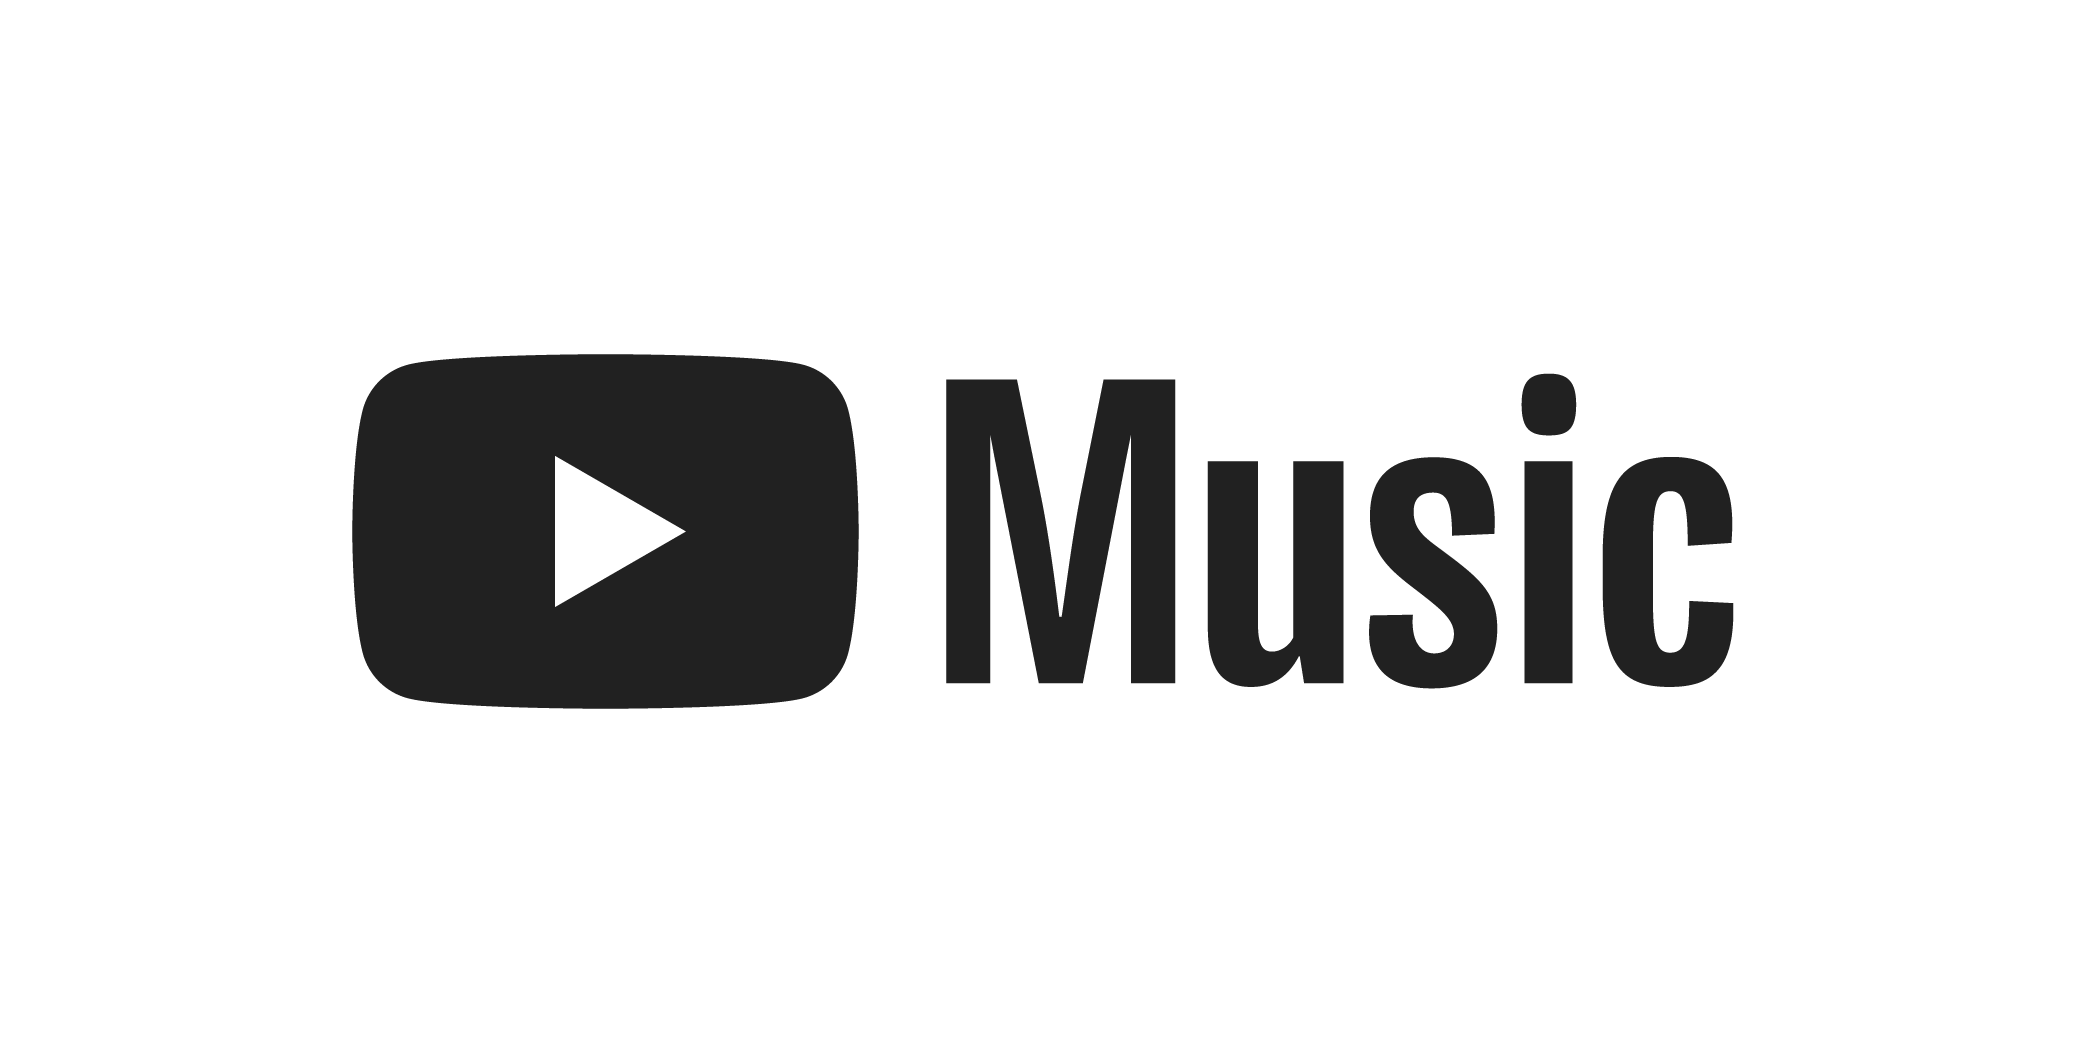 Ne официальная страница ютуб музыка. Youtube Music логотип. Ютуб музыка иконка. Ютуб музыка логотип. Музыкальный логотип.